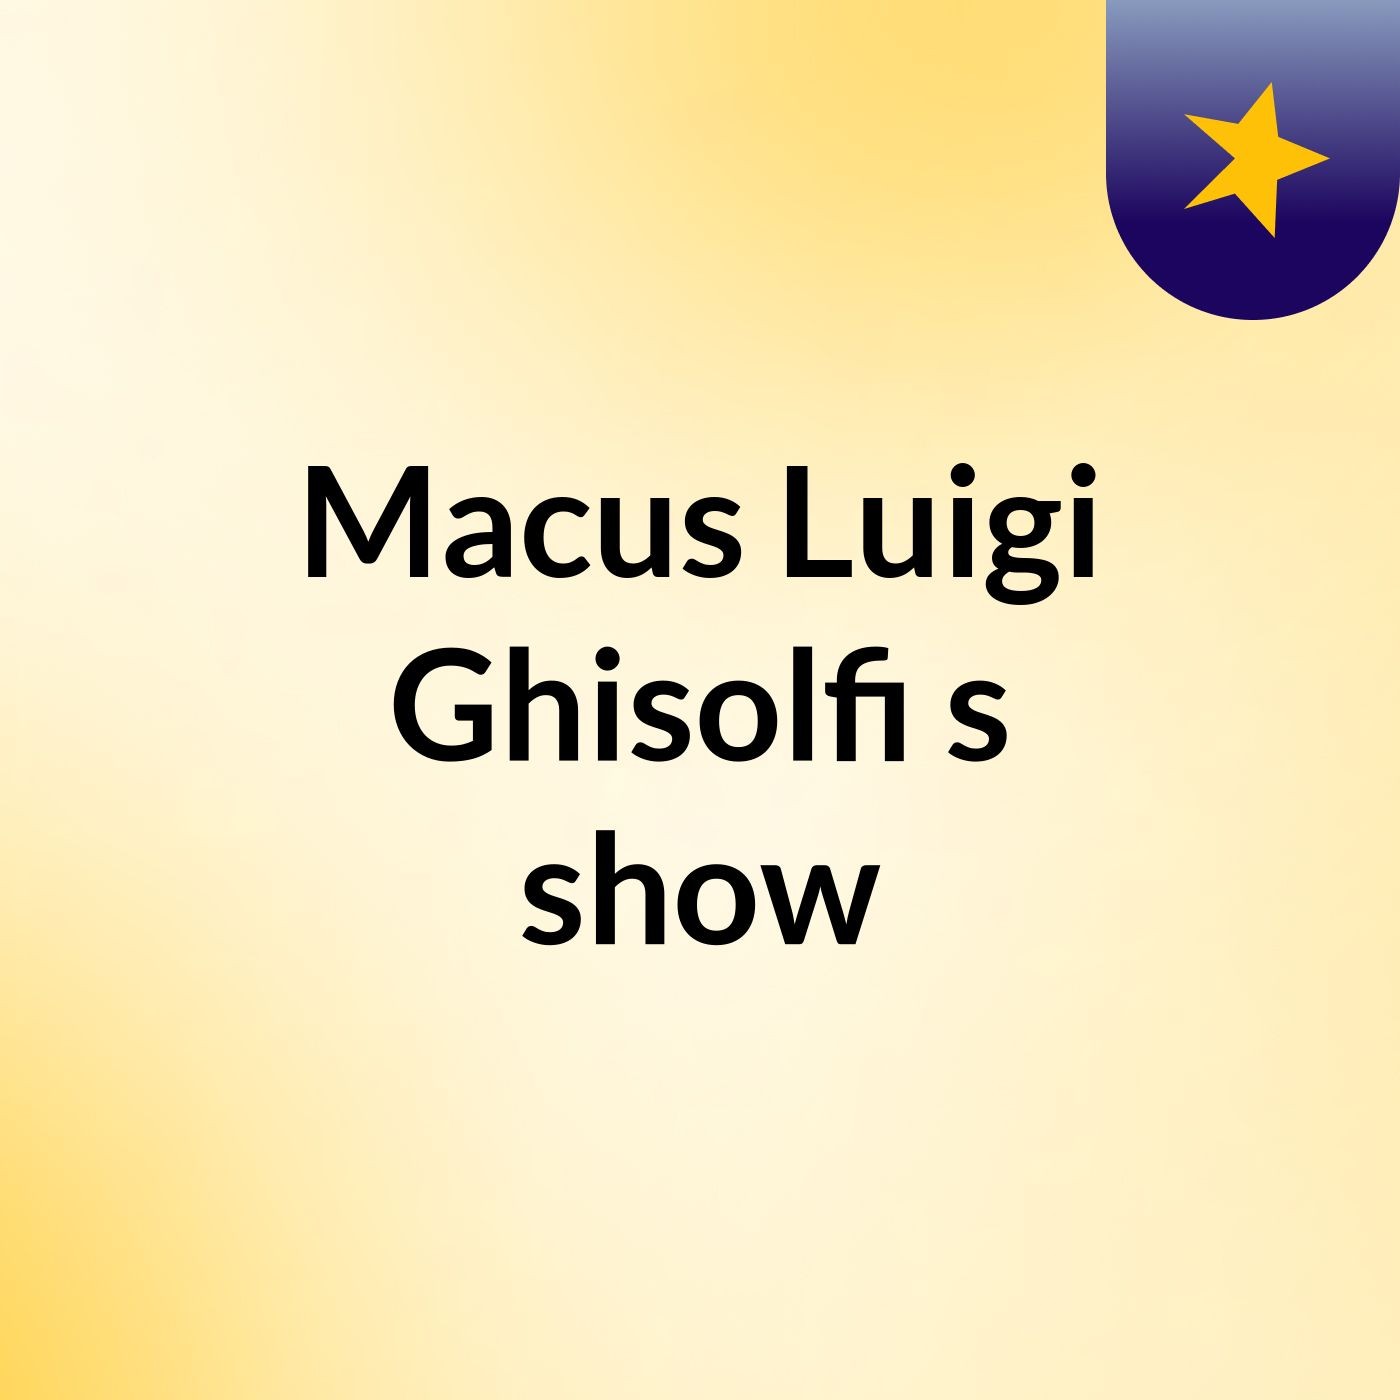 Macus Luigi Ghisolfi's show